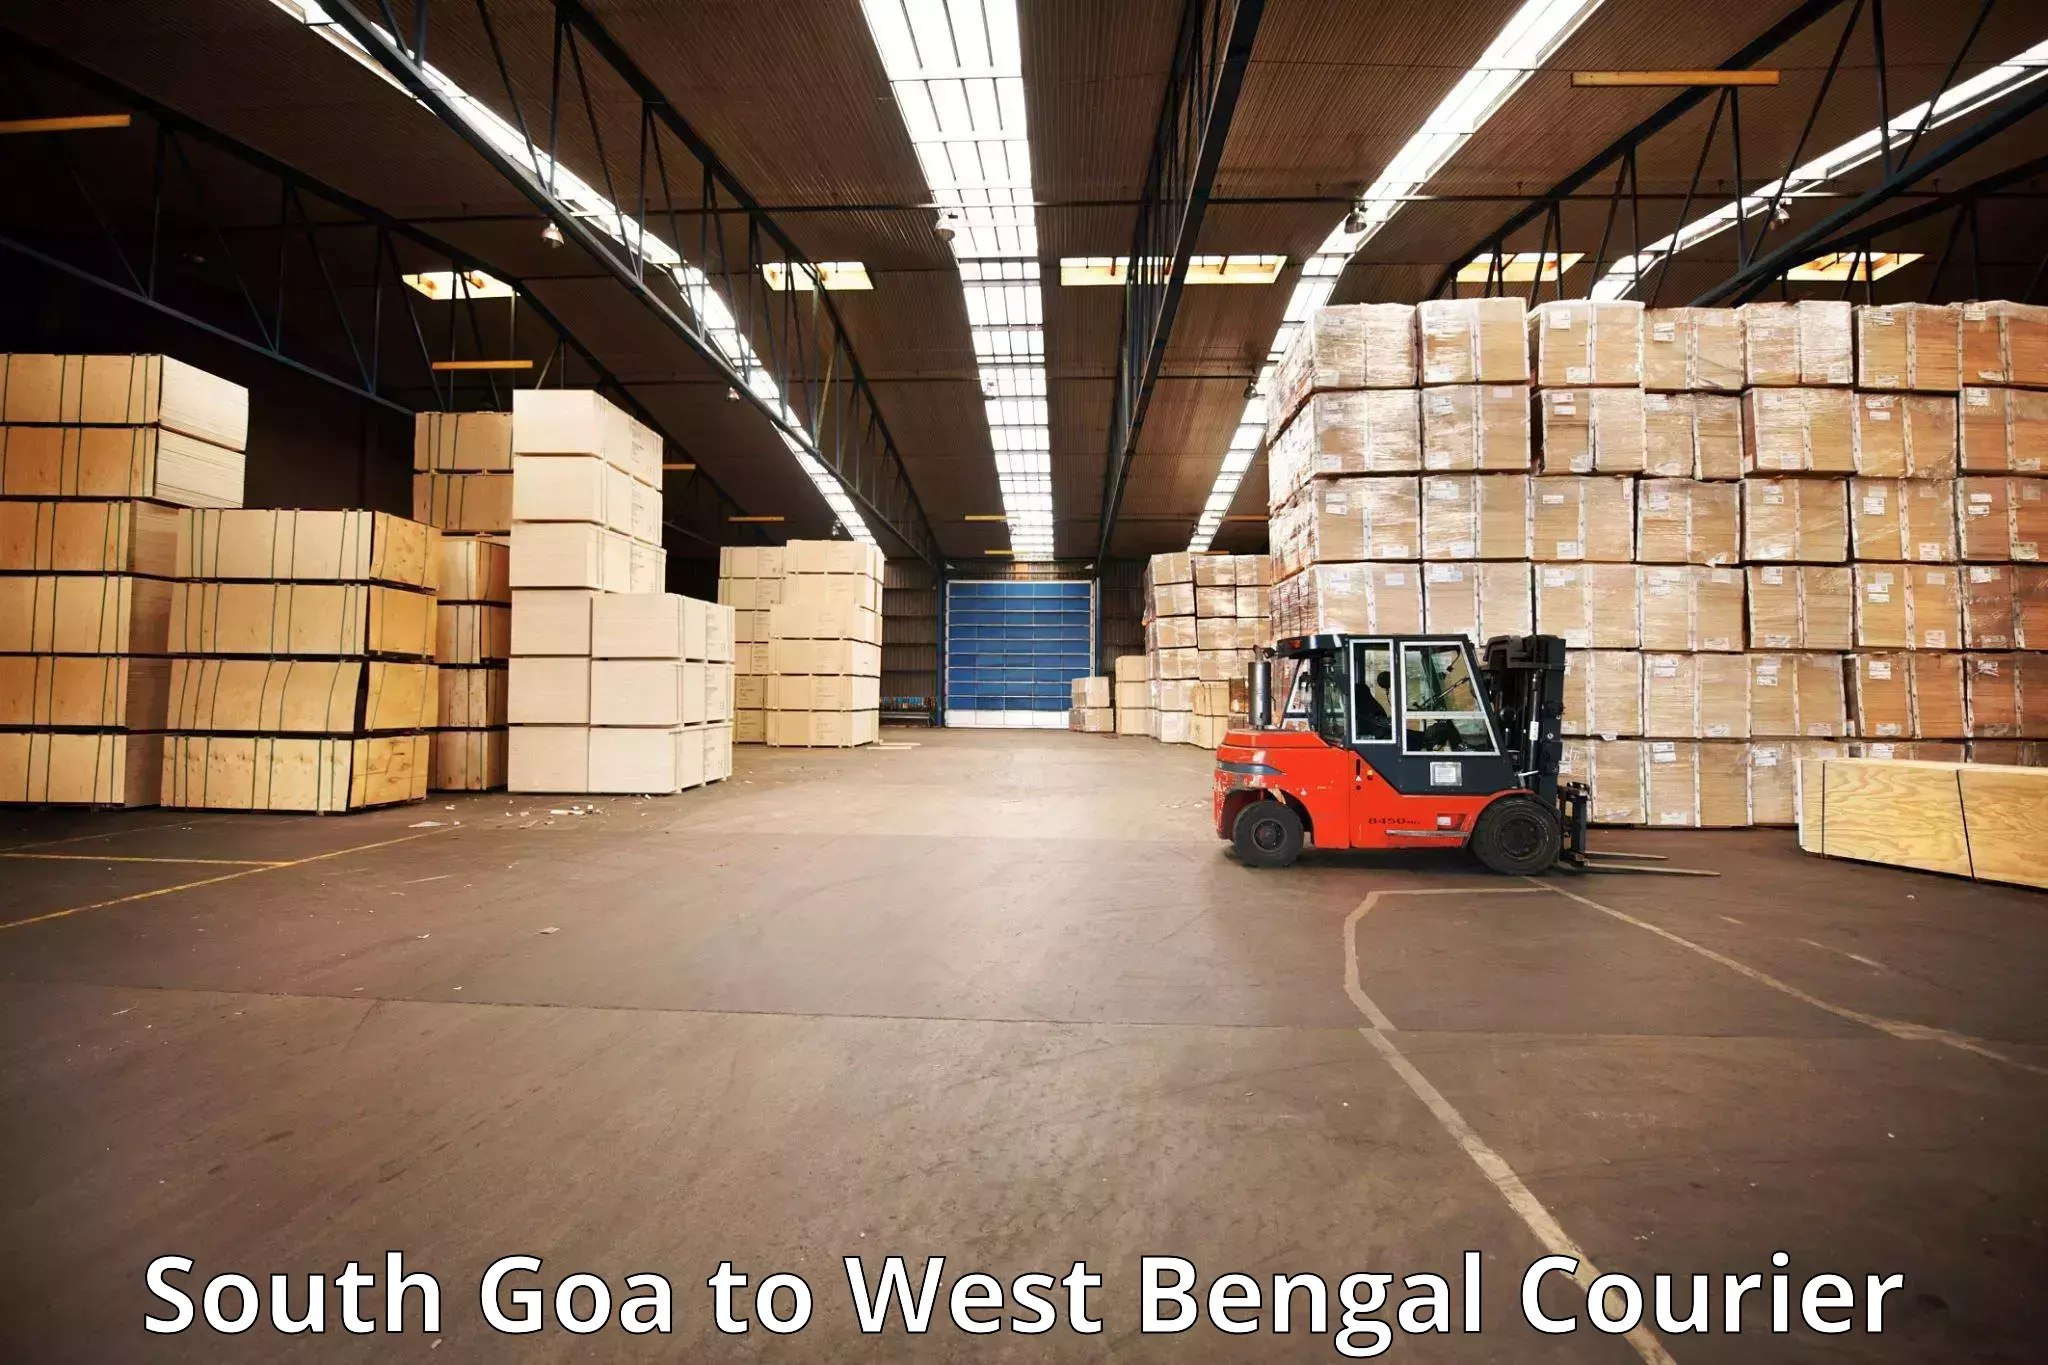 Baggage transport scheduler South Goa to Baneswar